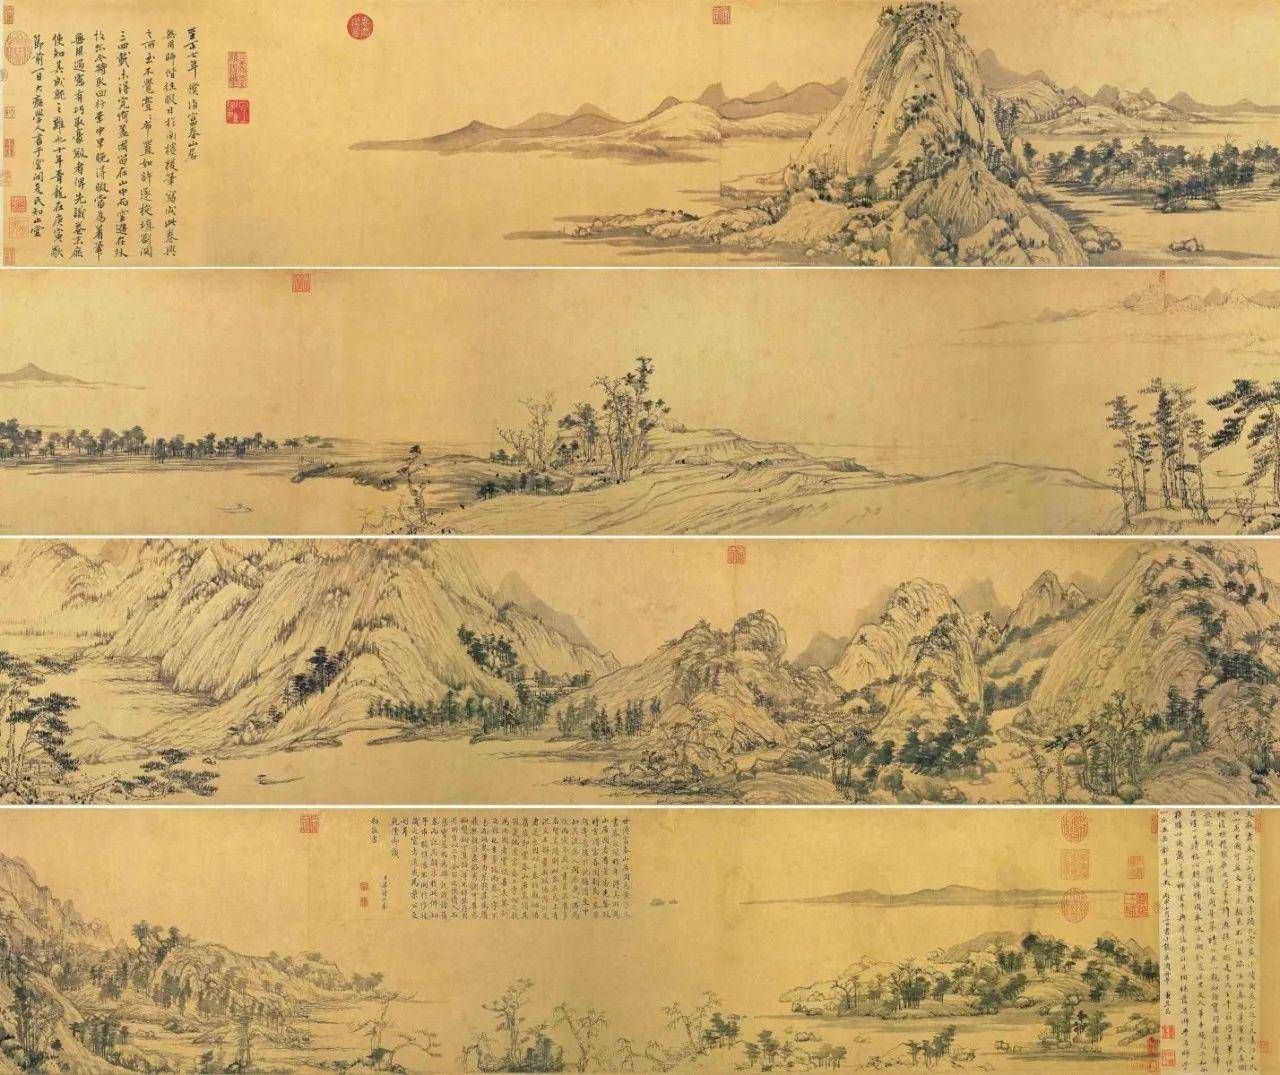 中国十大传世名画《富春山居图》的传世经历